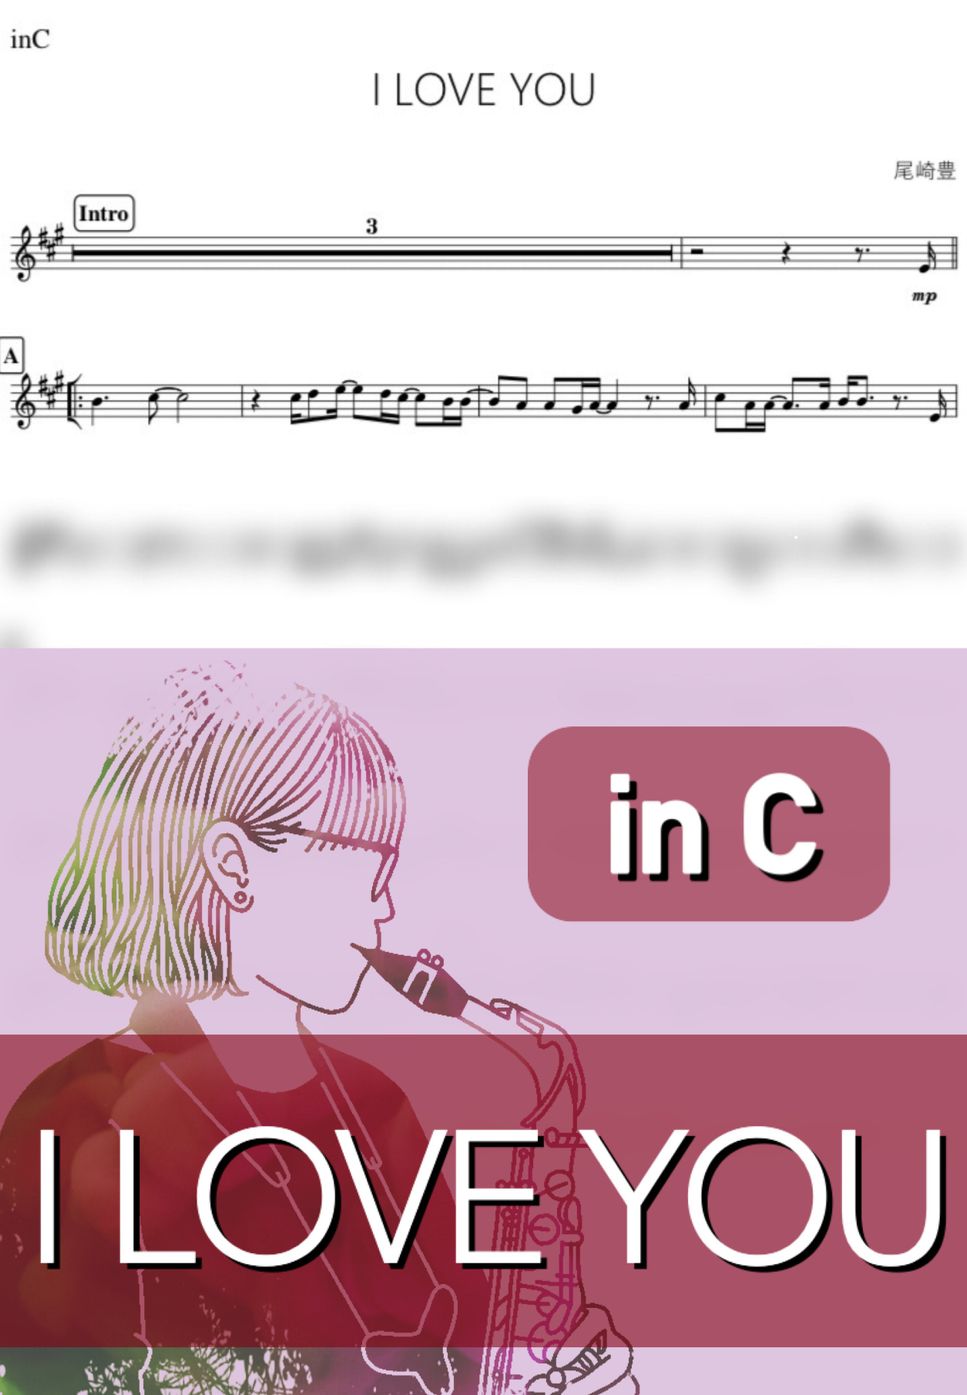 尾崎豊 - I LOVE YOU (C) by kanamusic